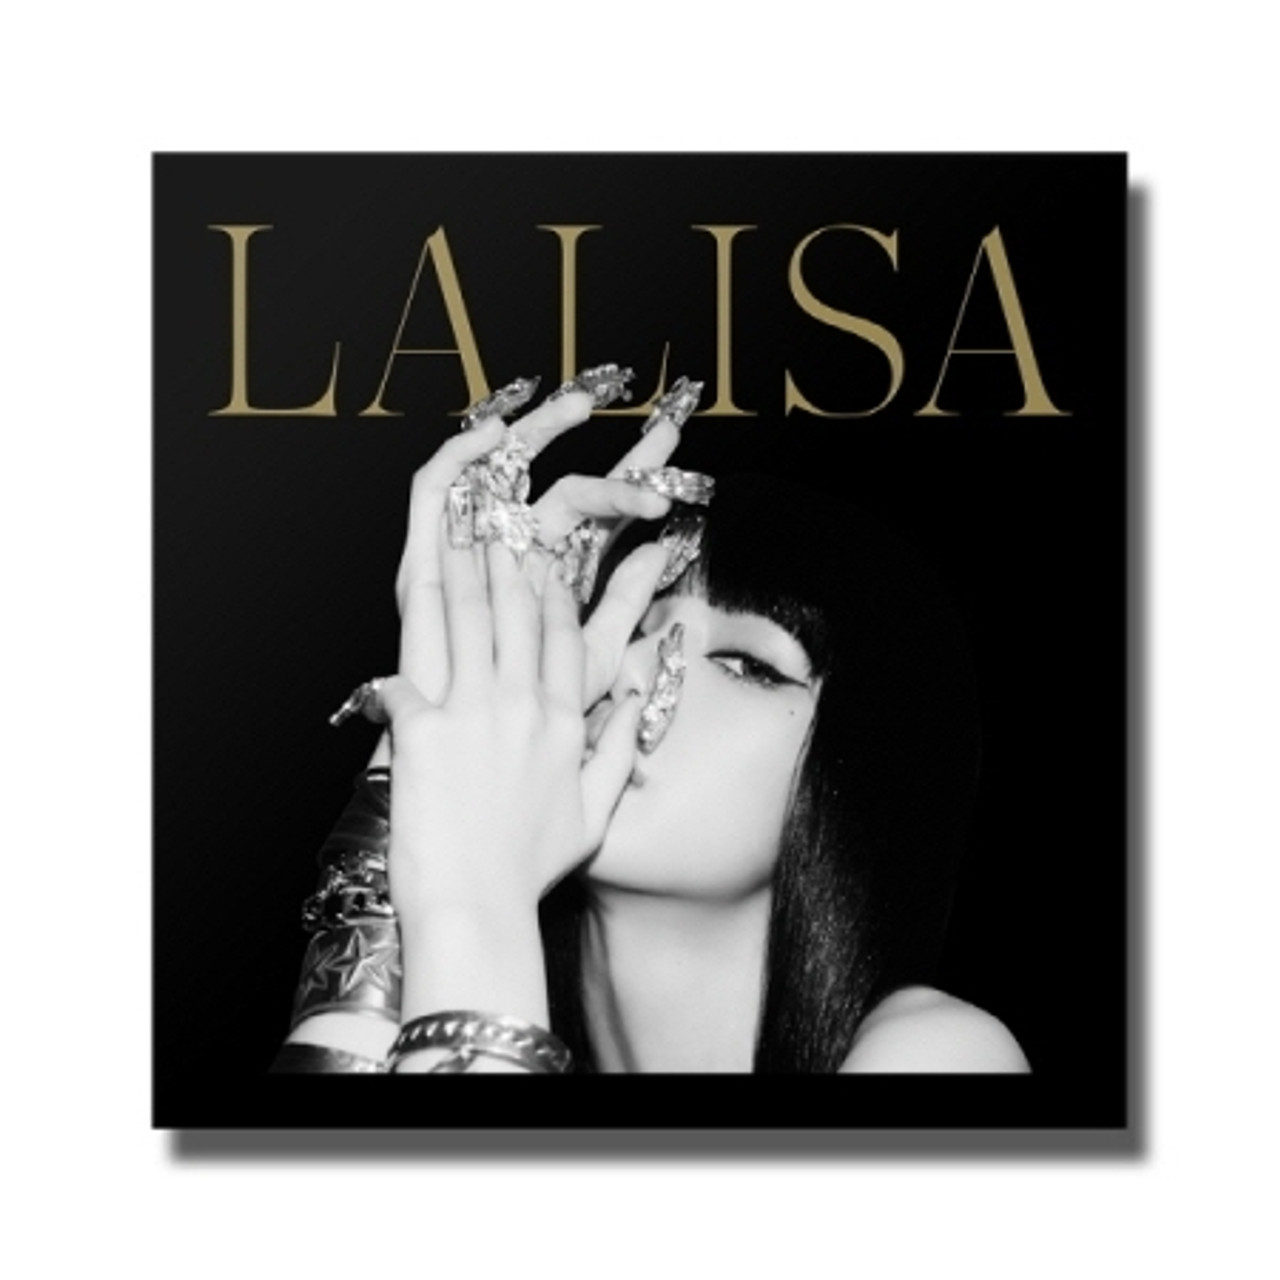 LISA1st Single Vinyl LP LALISA LIMITED EDITION